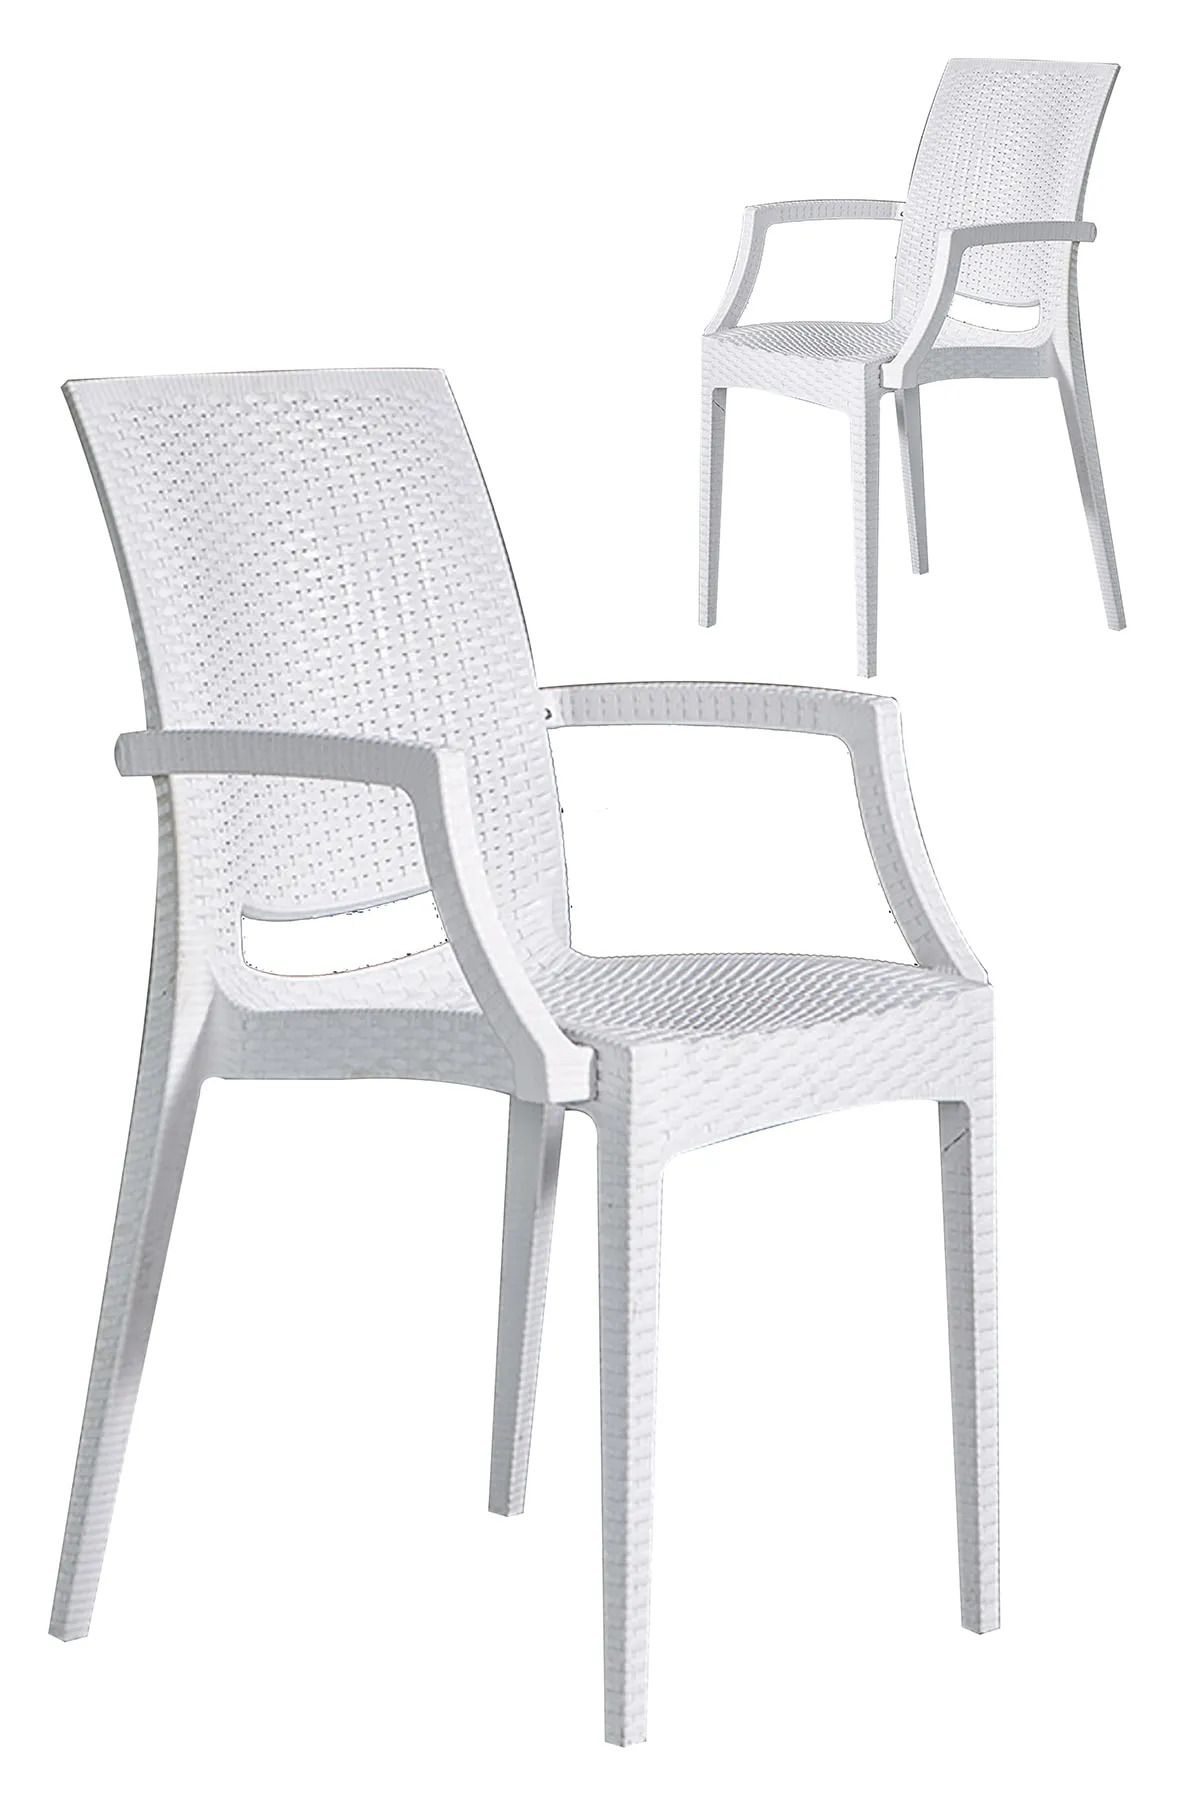 MOBETTO 2 Adet Rattan Lüx Beyaz Sandalye / Balkon-bahçe-teras